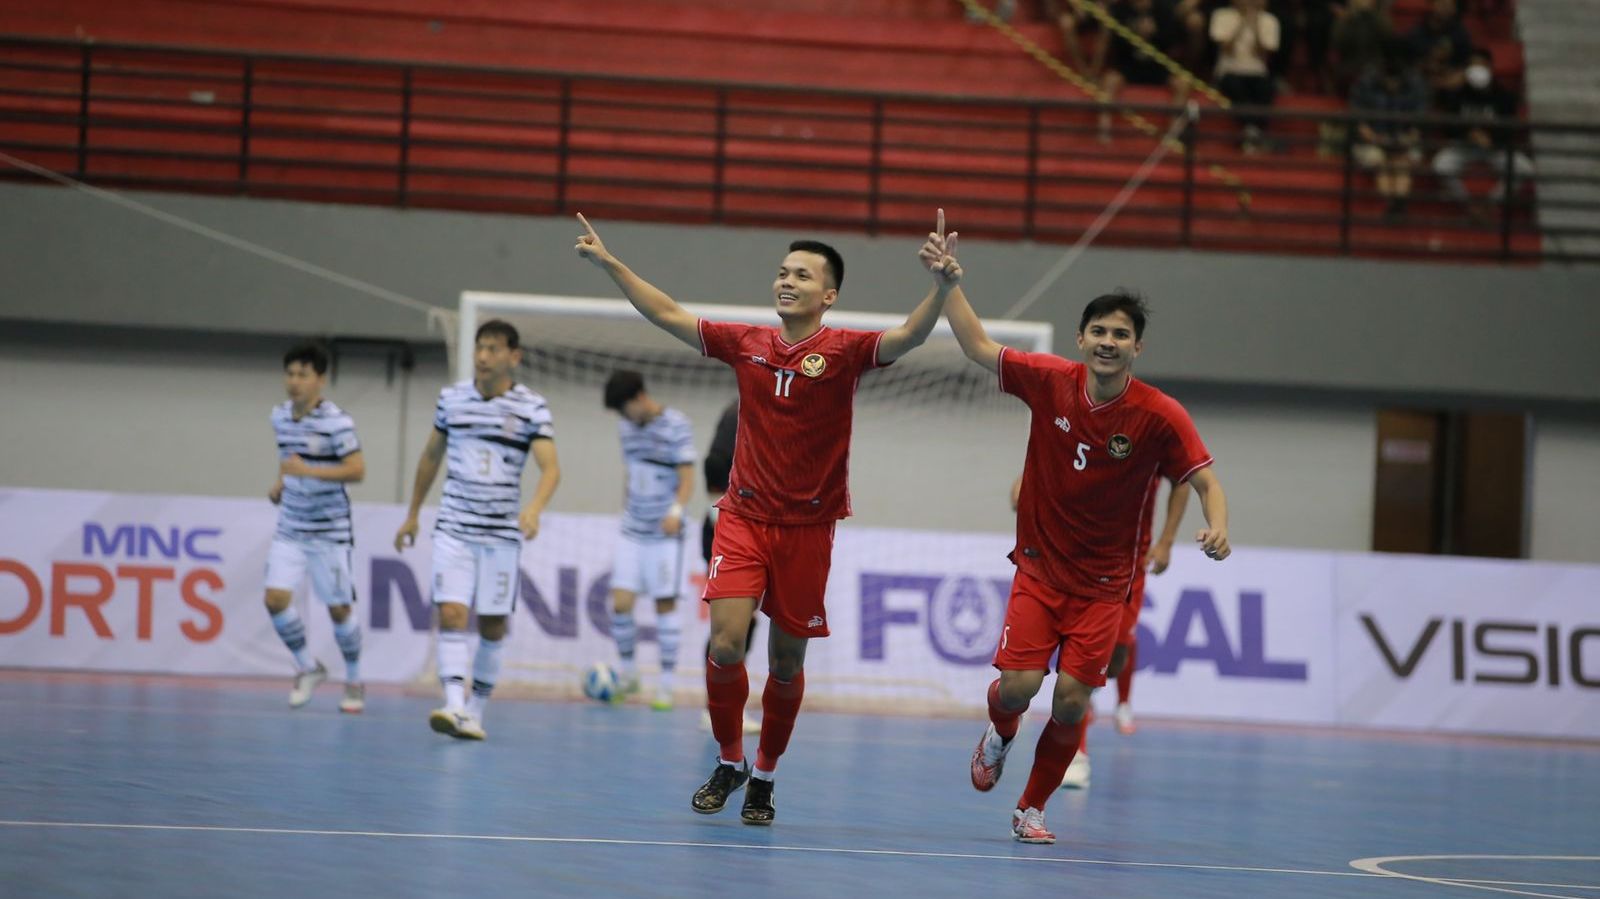 Subhan Faidasa (17) merayakan golnya bersama Dewa Rizki (5) untuk timnas futsal Indonesia ke gawang Korea Selatan pada MNC International Futsal Cup 2022 di GOR Amongrogo, Yogyakarta, 6 September 2022.